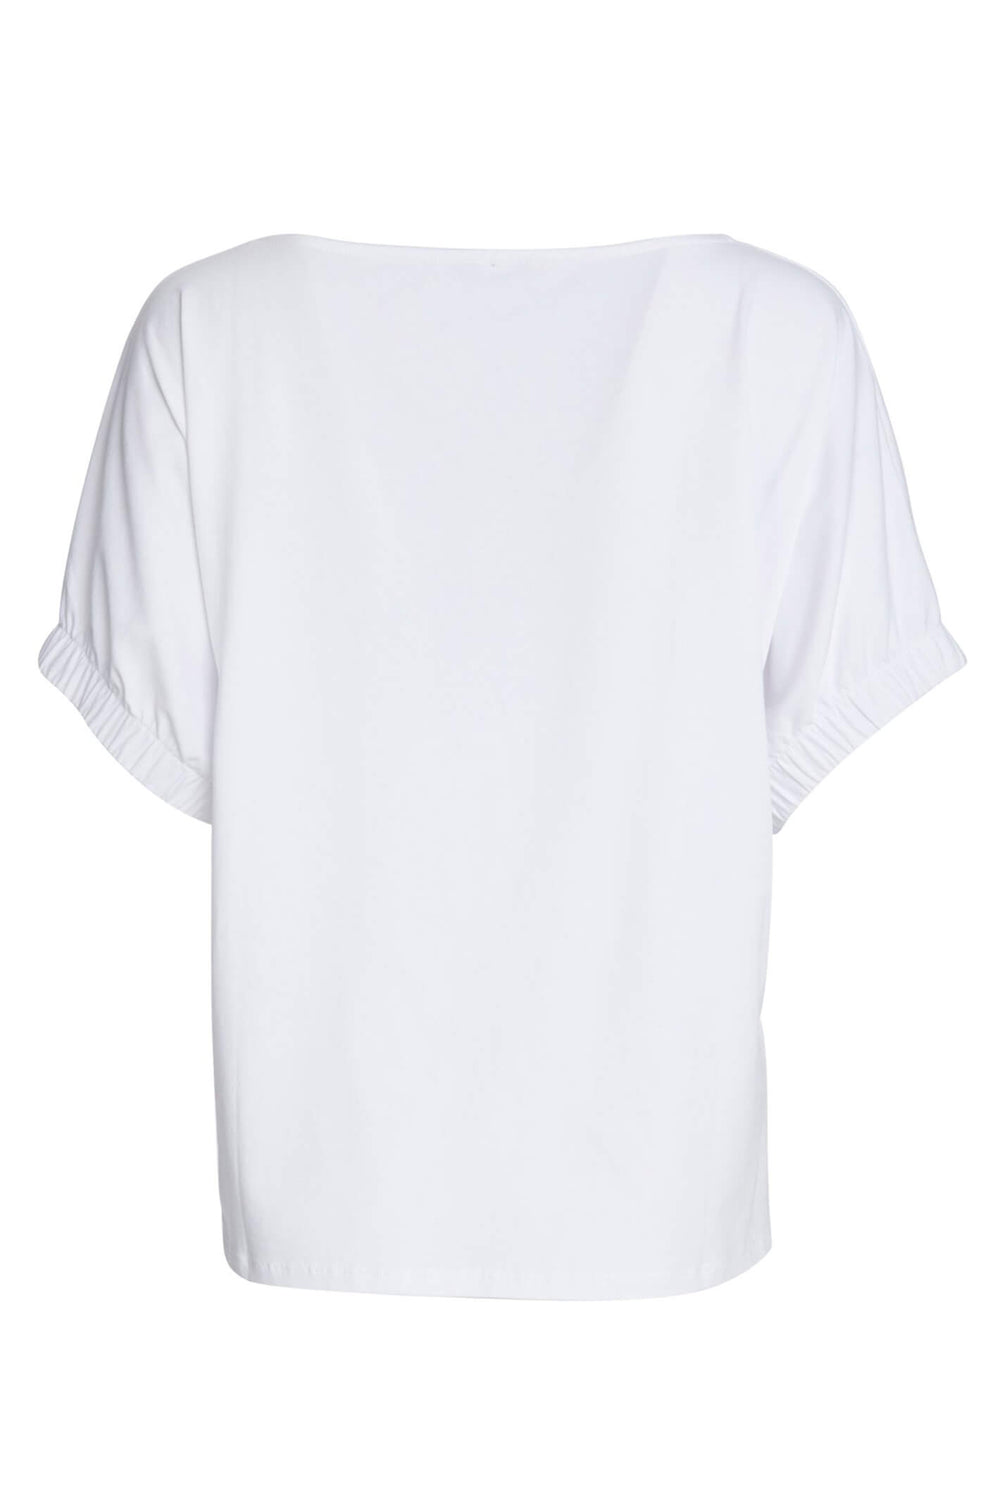 Naya NAS23120 White Elasticated Sleeve T-Shirt - Olivia Grace Fashion